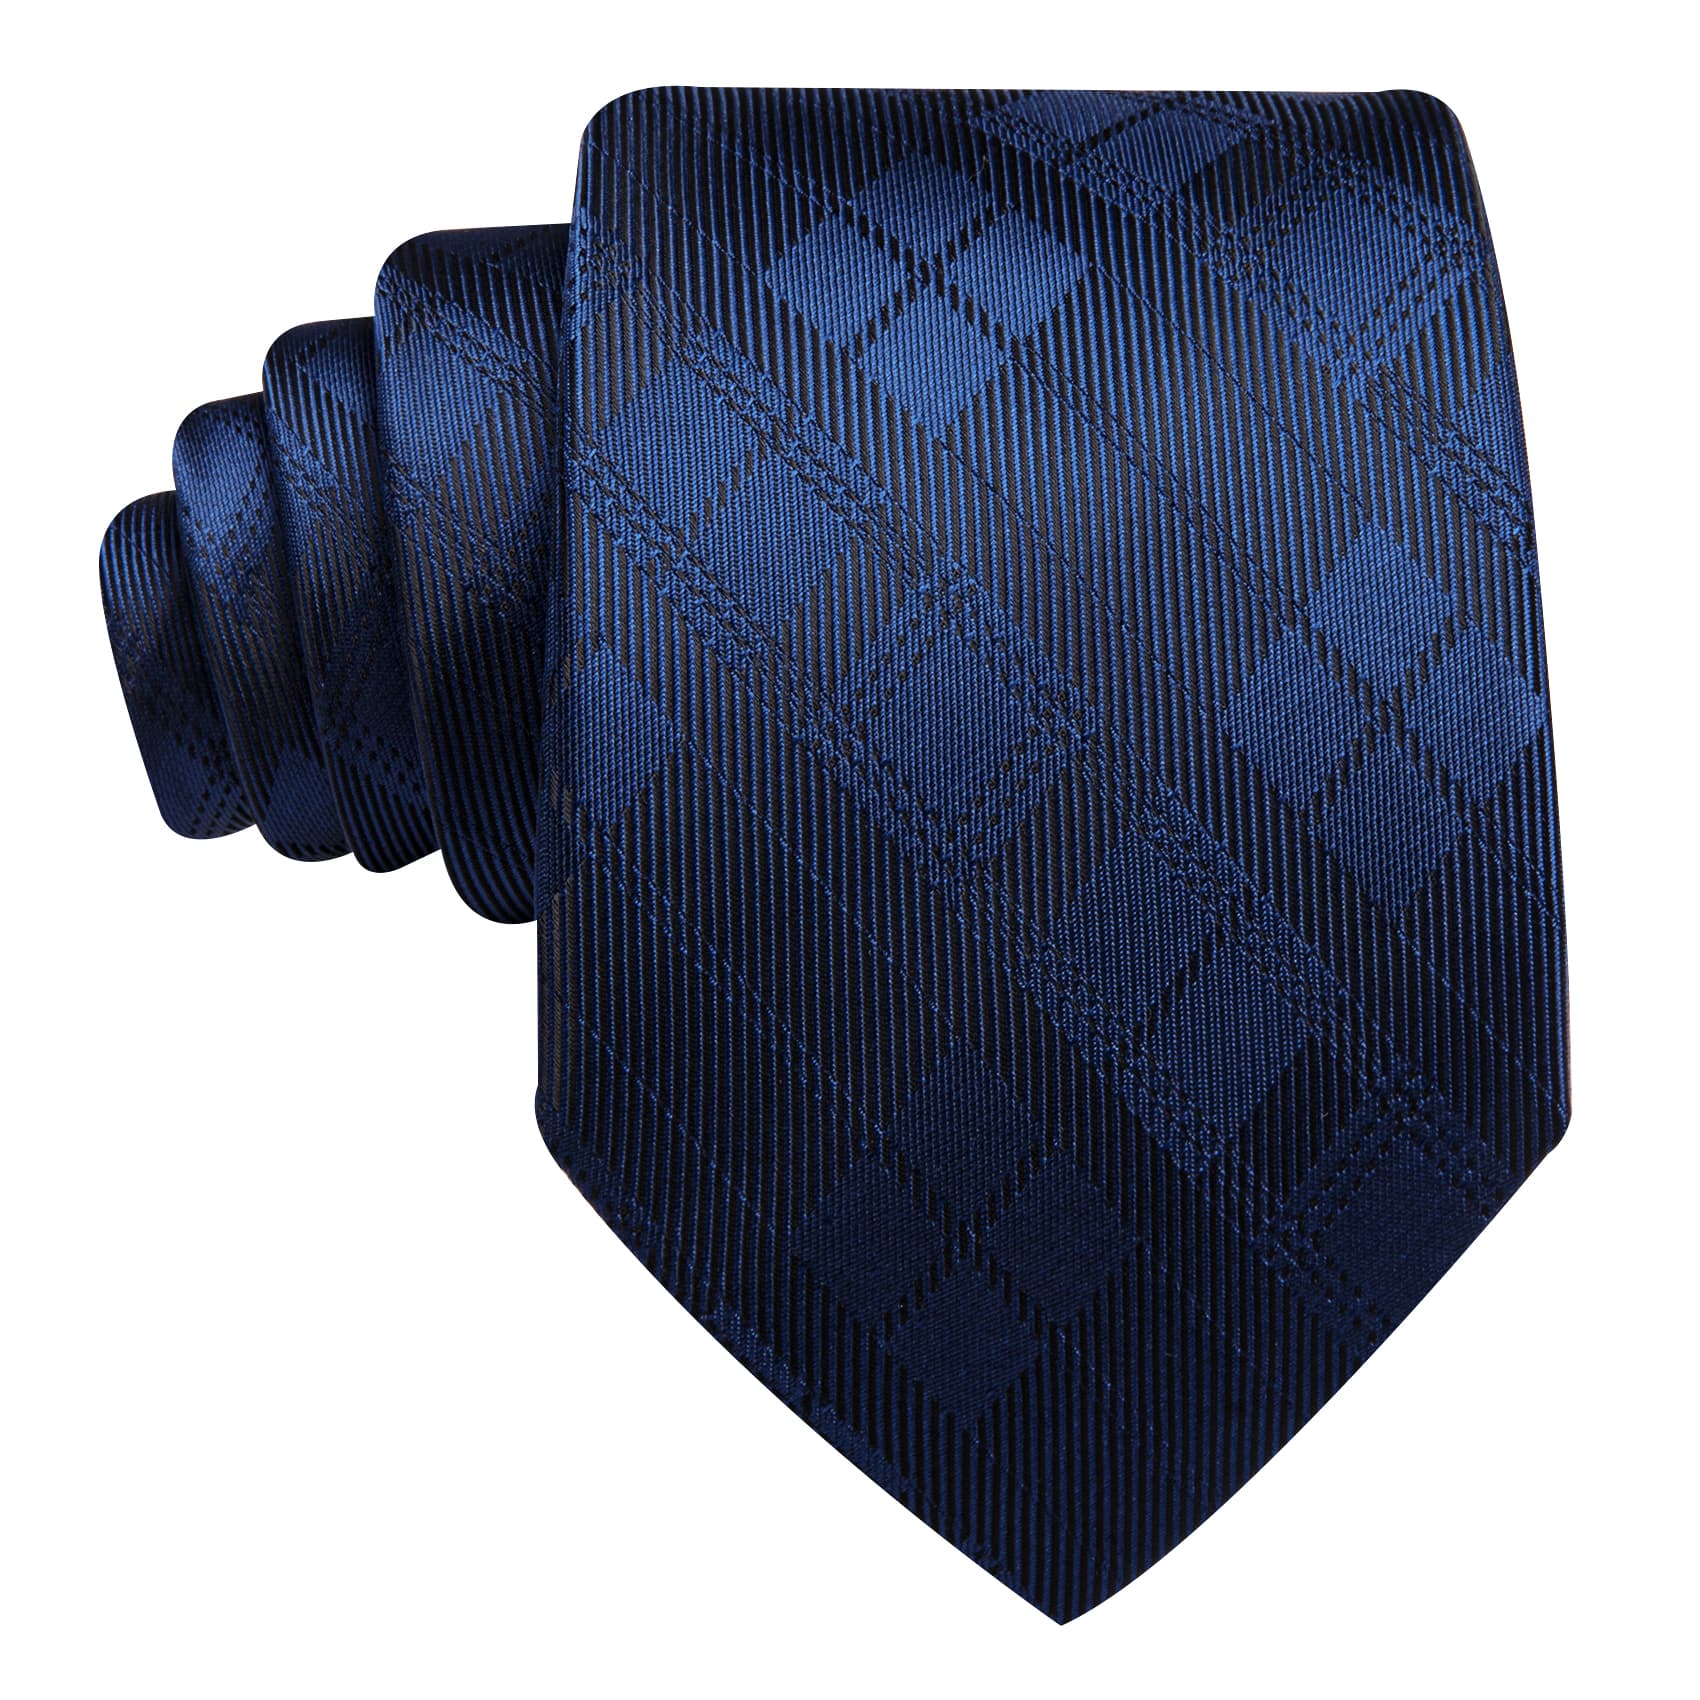 Tie Black Blue Checkered Necktie Hanky Cufflinks Set